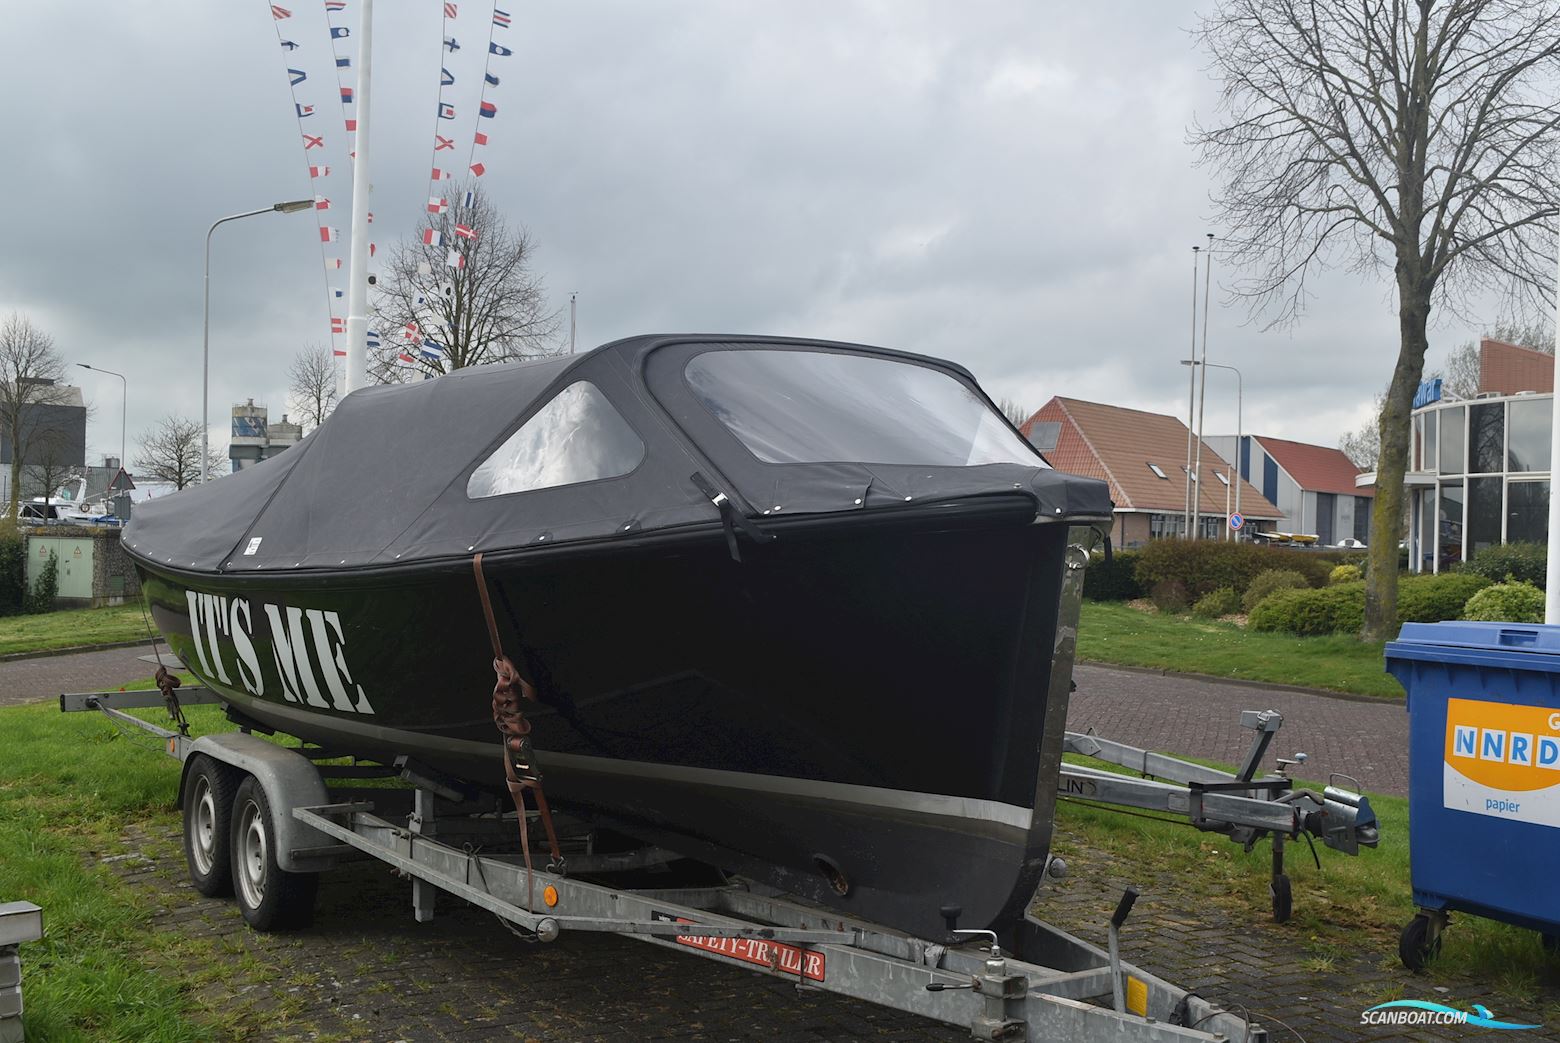 Lifestyle 740 Met Tandemas Trailer Motorboot 2008, mit Vetus M3-27 PK motor, Niederlande